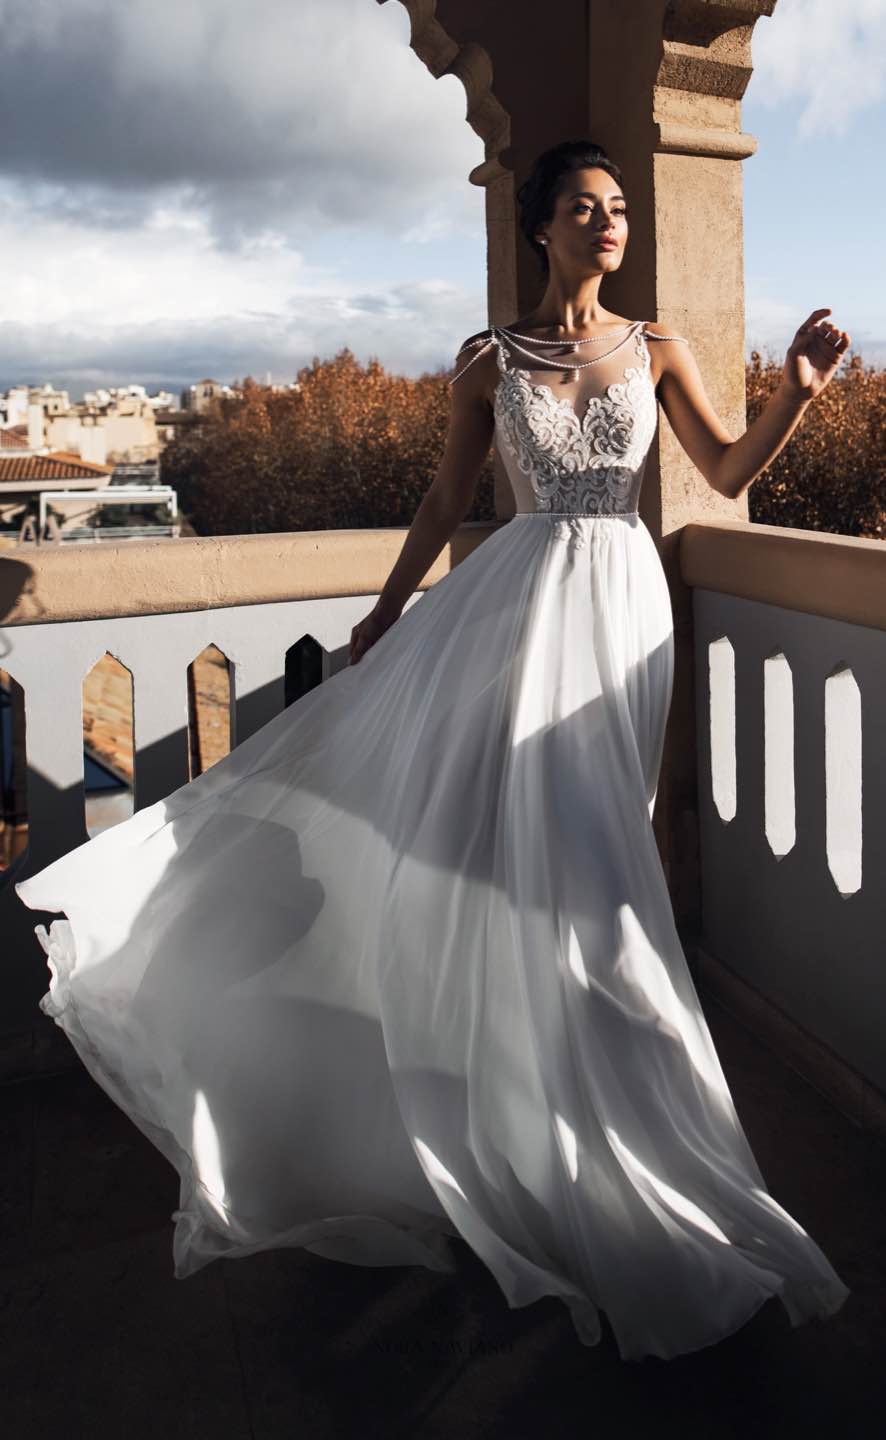 Свадебное платье 2019 Nora Naviano